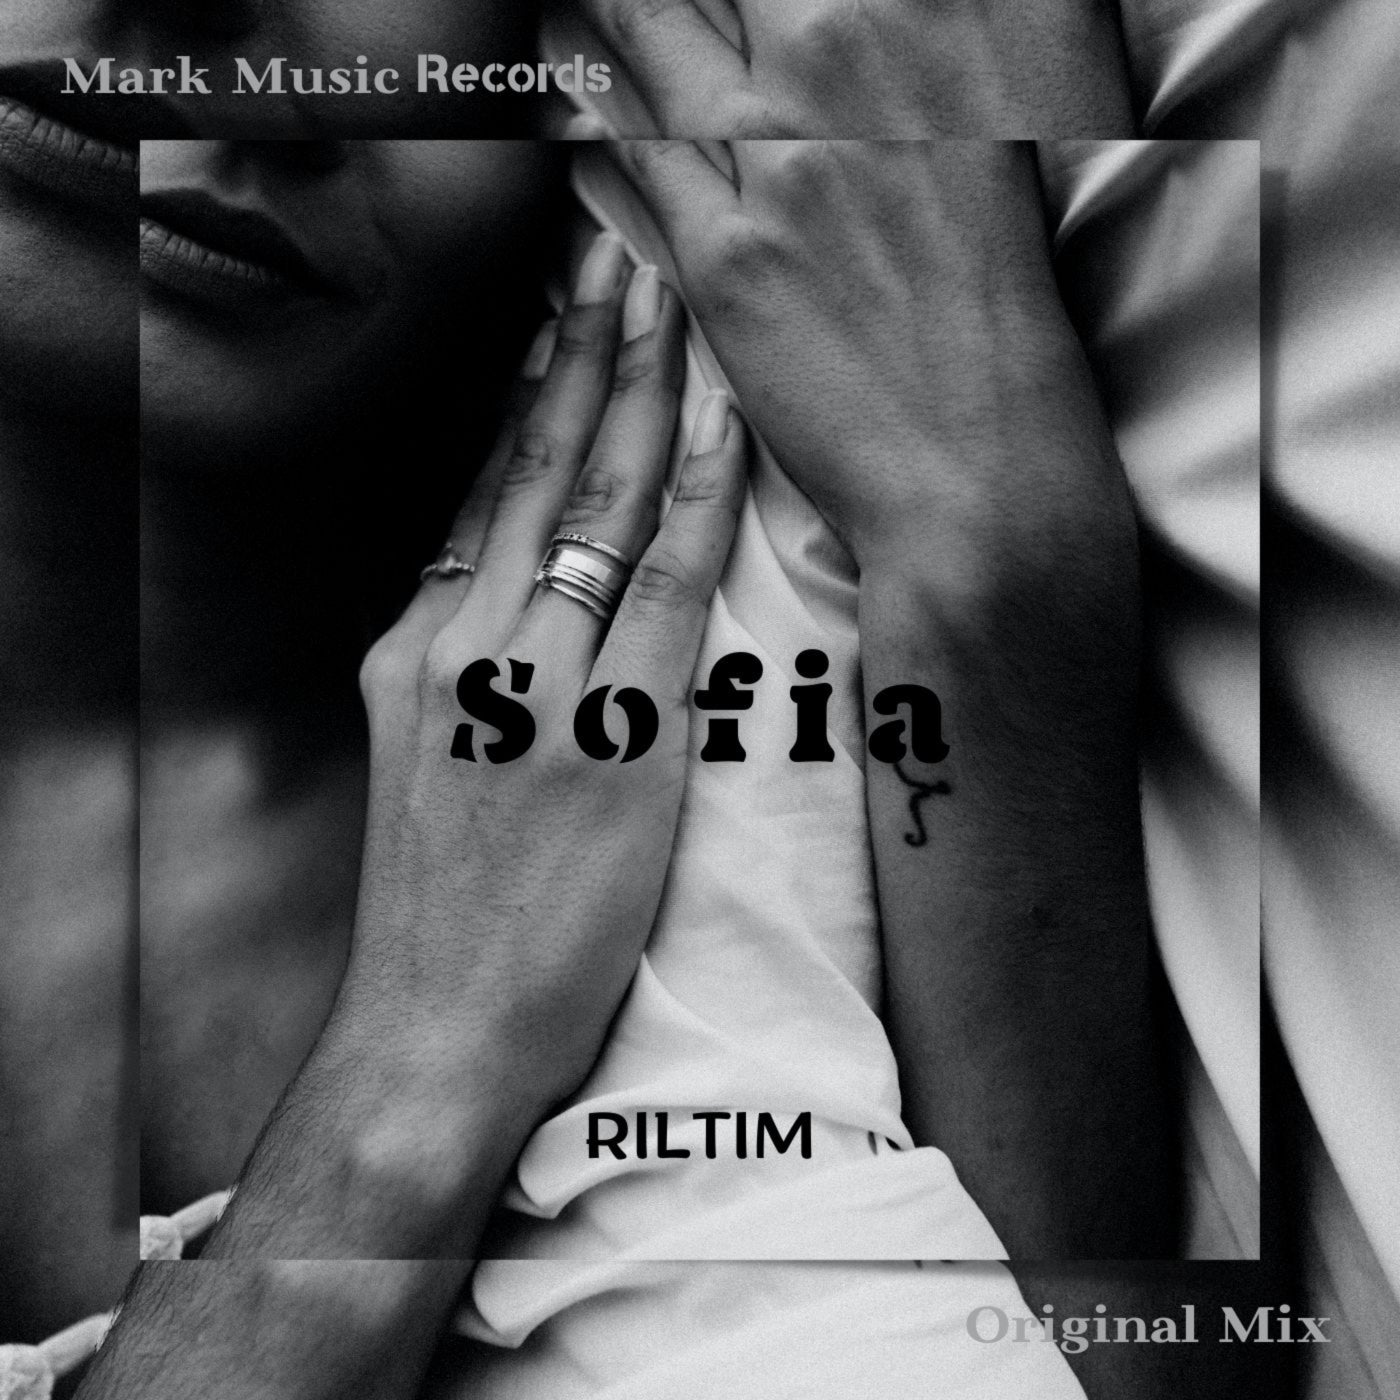 Музыка mark music records. Riltim riltim. Mark Music records. Биография riltim. Sofia Original.